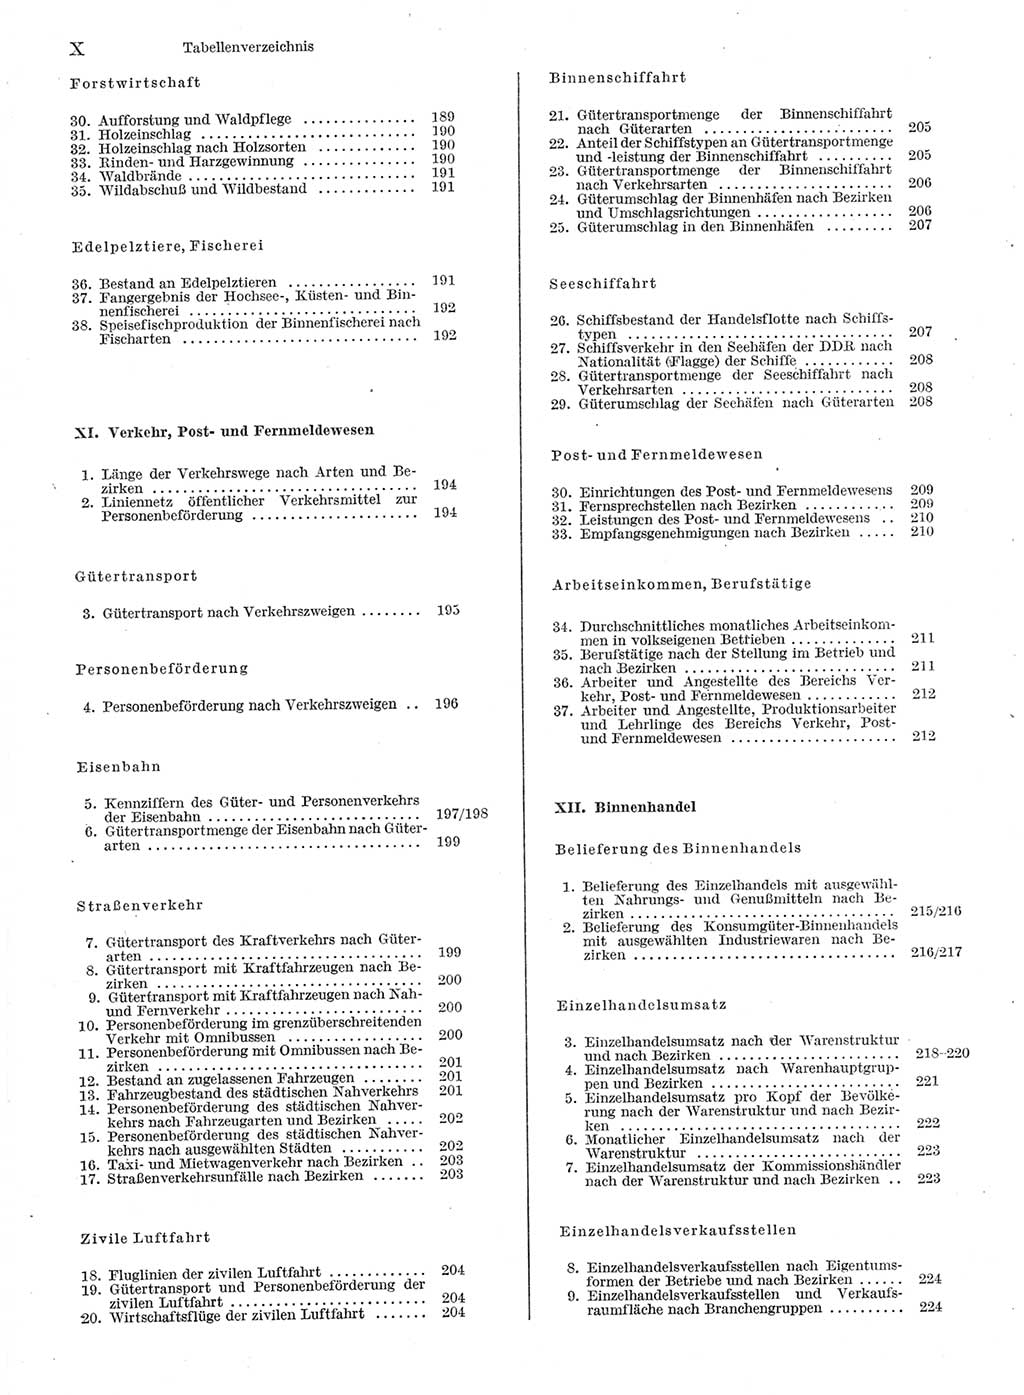 Statistisches Jahrbuch der Deutschen Demokratischen Republik (DDR) 1978, Seite 10 (Stat. Jb. DDR 1978, S. 10)